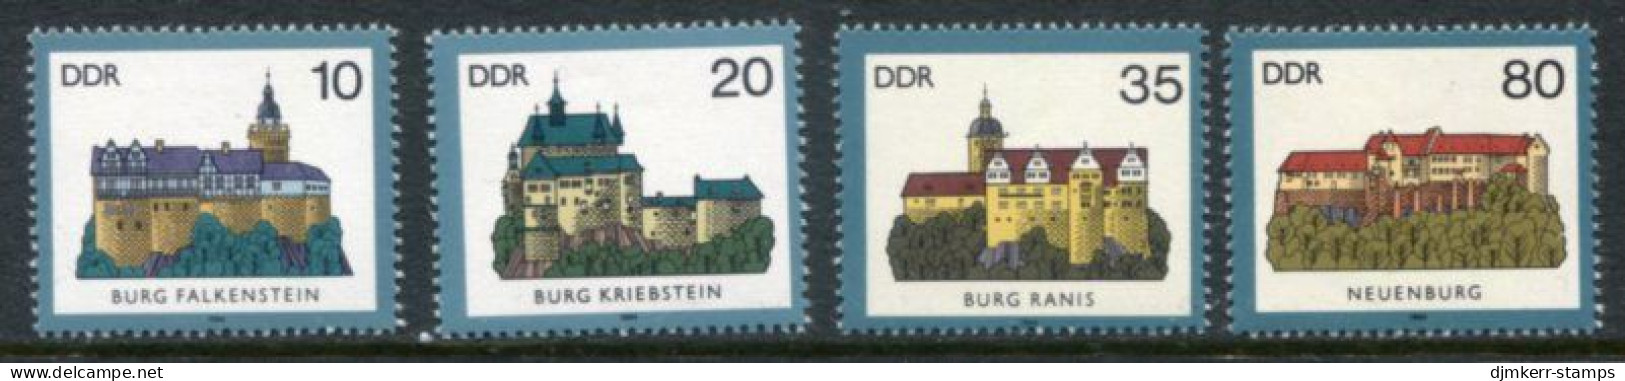 DDR 1984 Castles MNH / **.  Michel 2910-13 - Nuevos